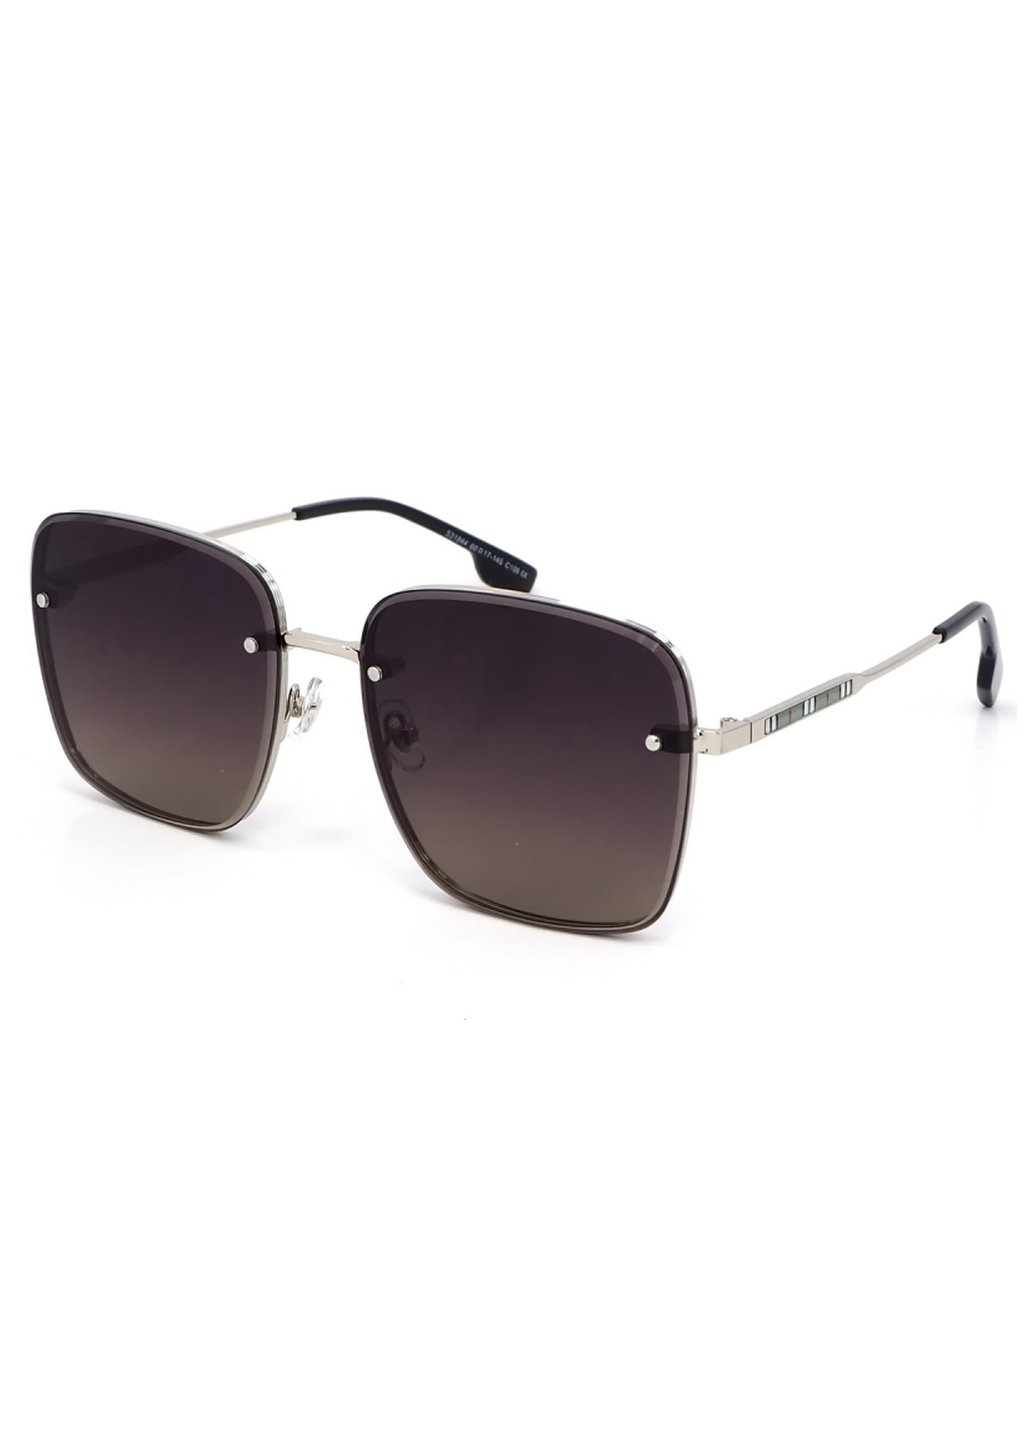 Купить Женские солнцезащитные очки Merlini с поляризацией S31844 117136 - Серебристый в интернет-магазине